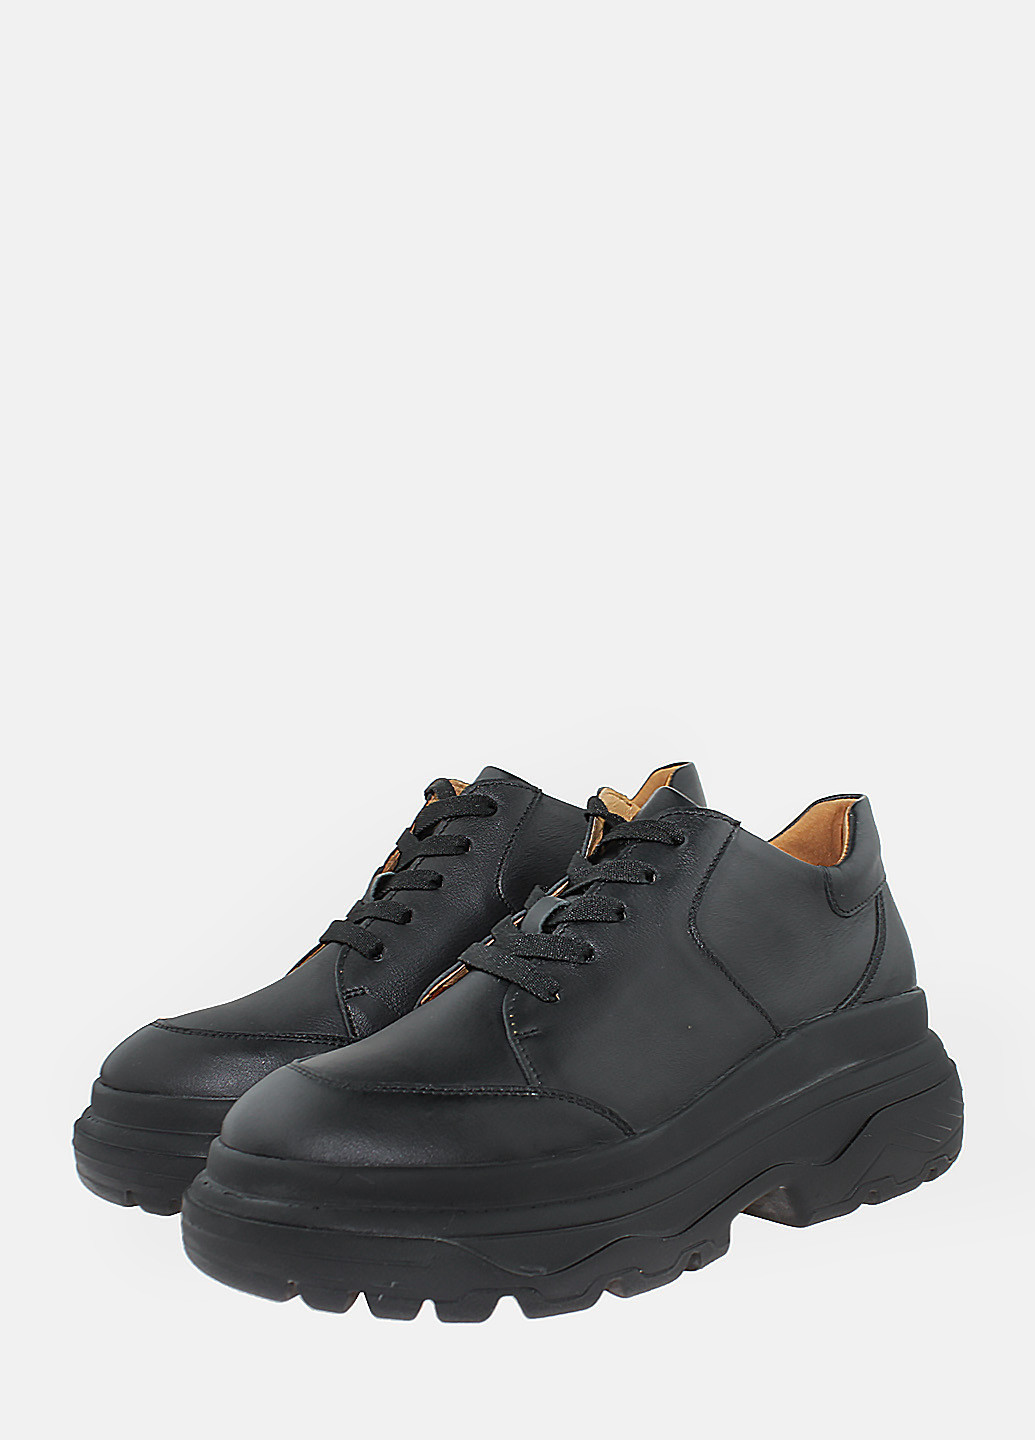 Осенние ботинки rhit001-1 черный Hitcher